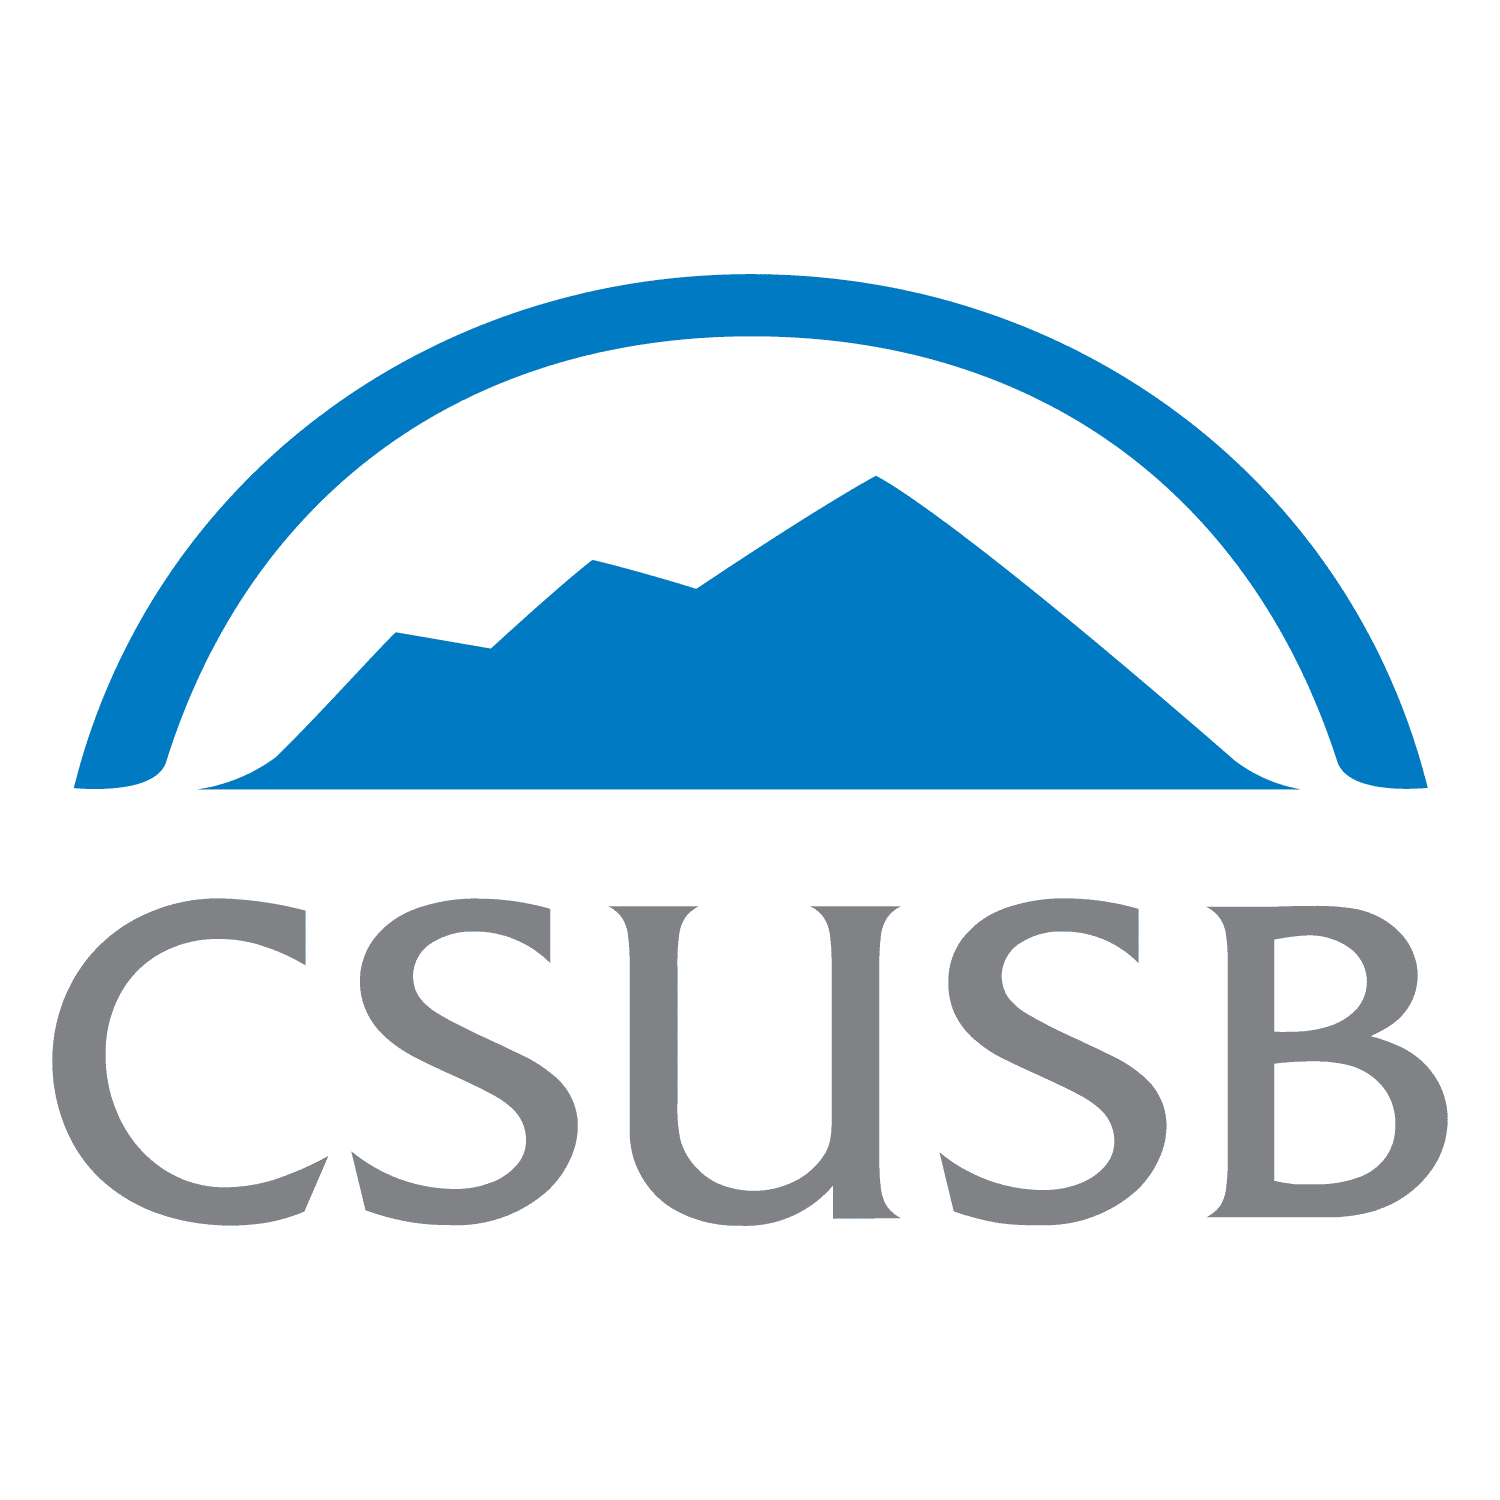 California State University, San Bernardino (CSU San Bernardino)